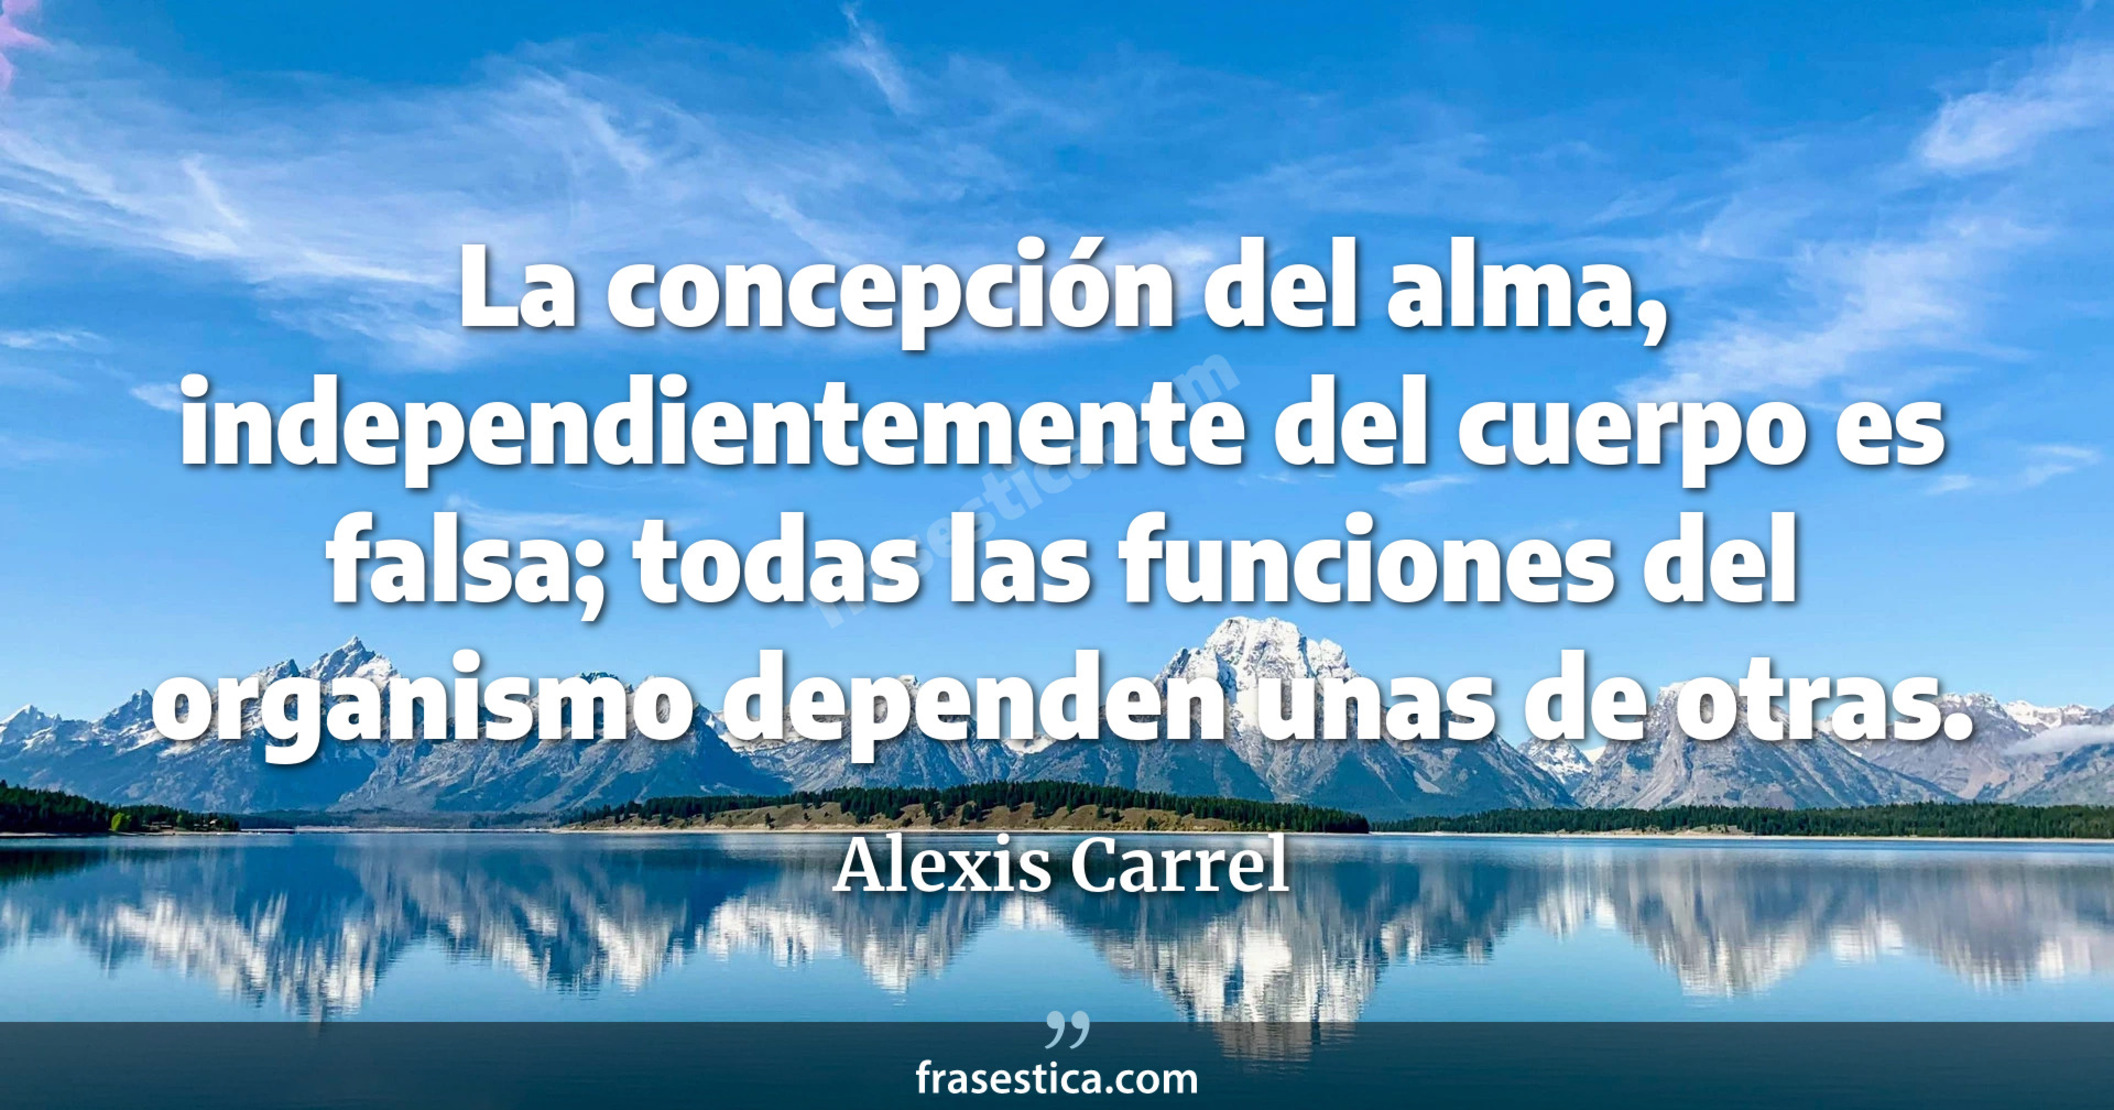 La concepción del alma, independientemente del cuerpo es falsa; todas las funciones del organismo dependen unas de otras. - Alexis Carrel